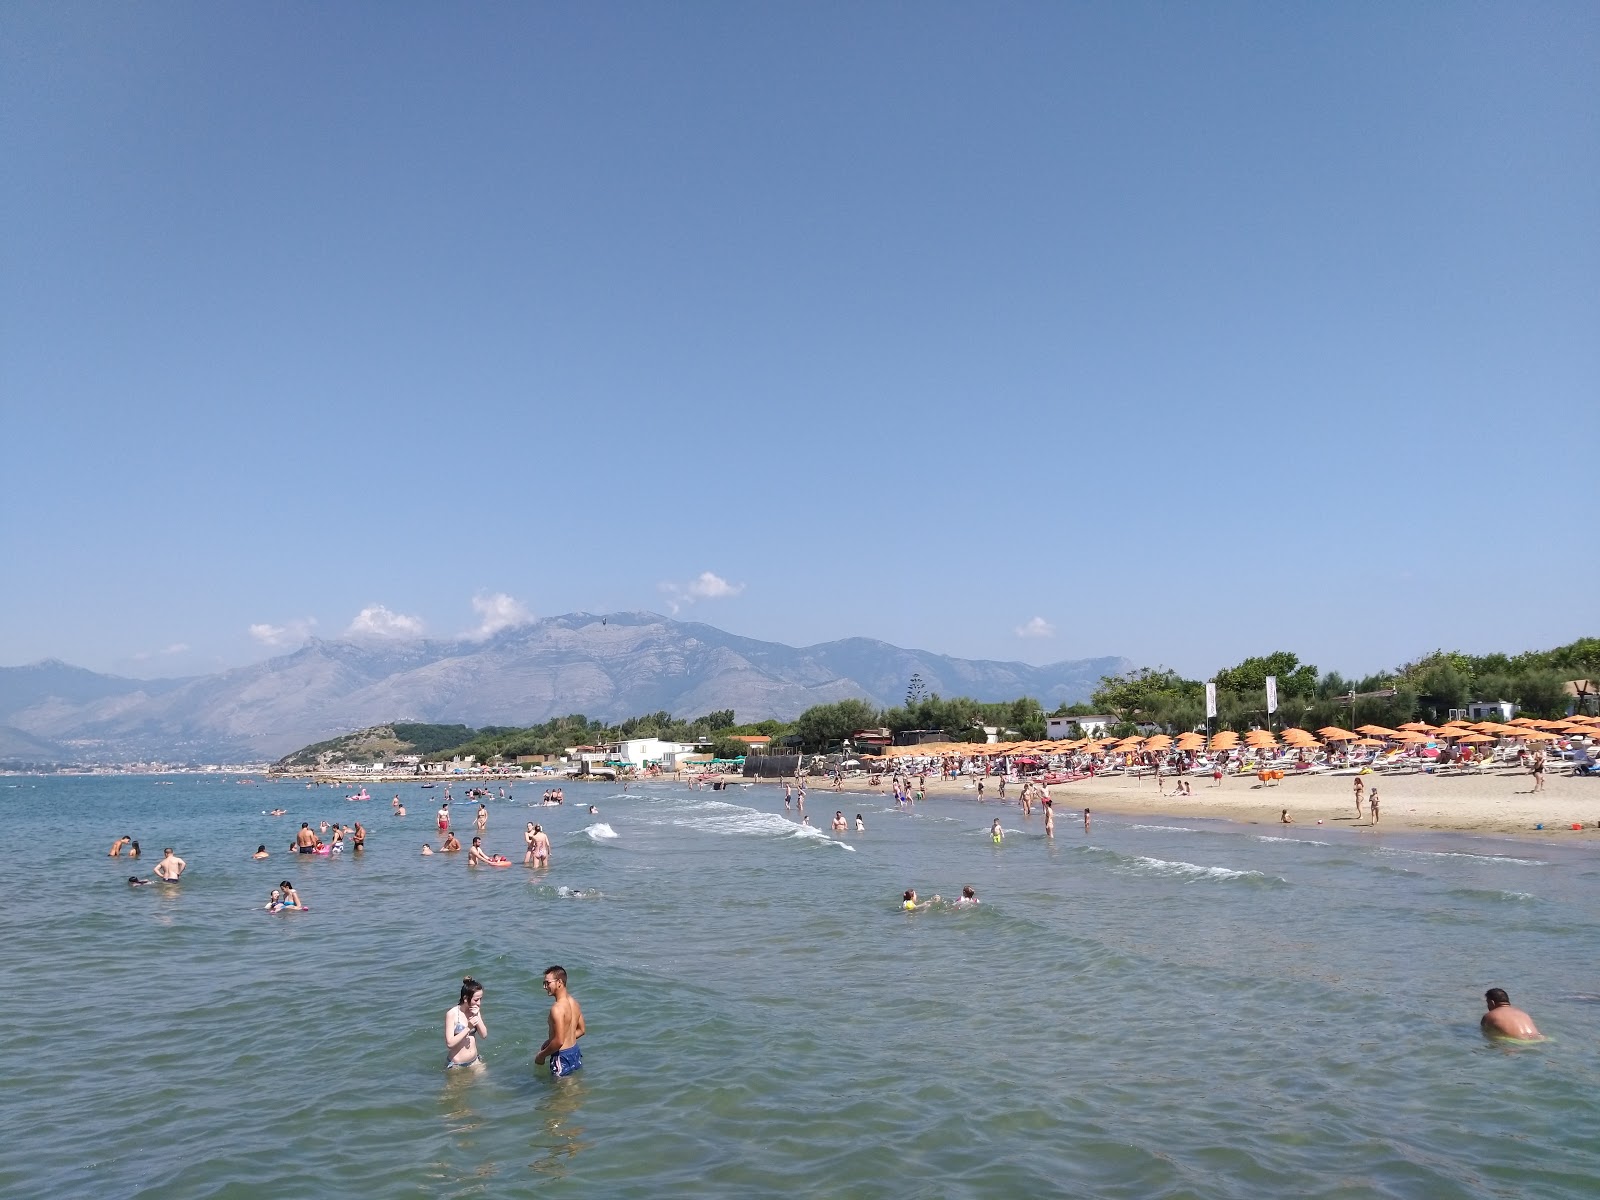 Zdjęcie Marina di Minturno beach z powierzchnią niebieska woda